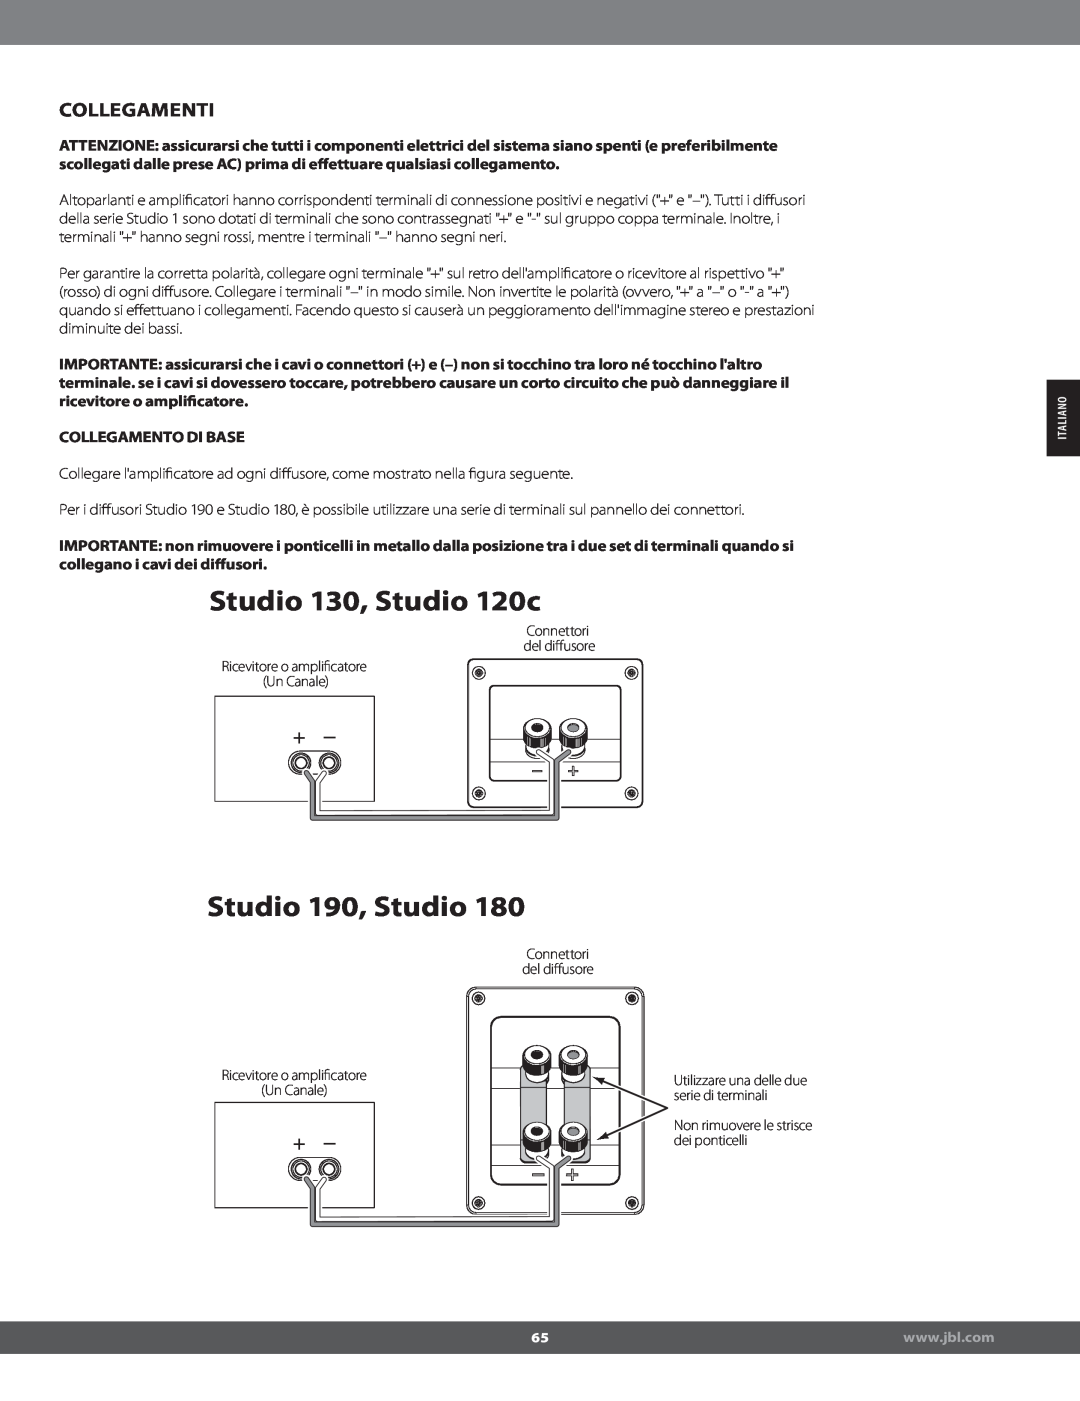 JBL STUDIO180 manual Collegamenti, Collegamento Di Base, Studio 130, Studio 120c, Studio 190, Studio 